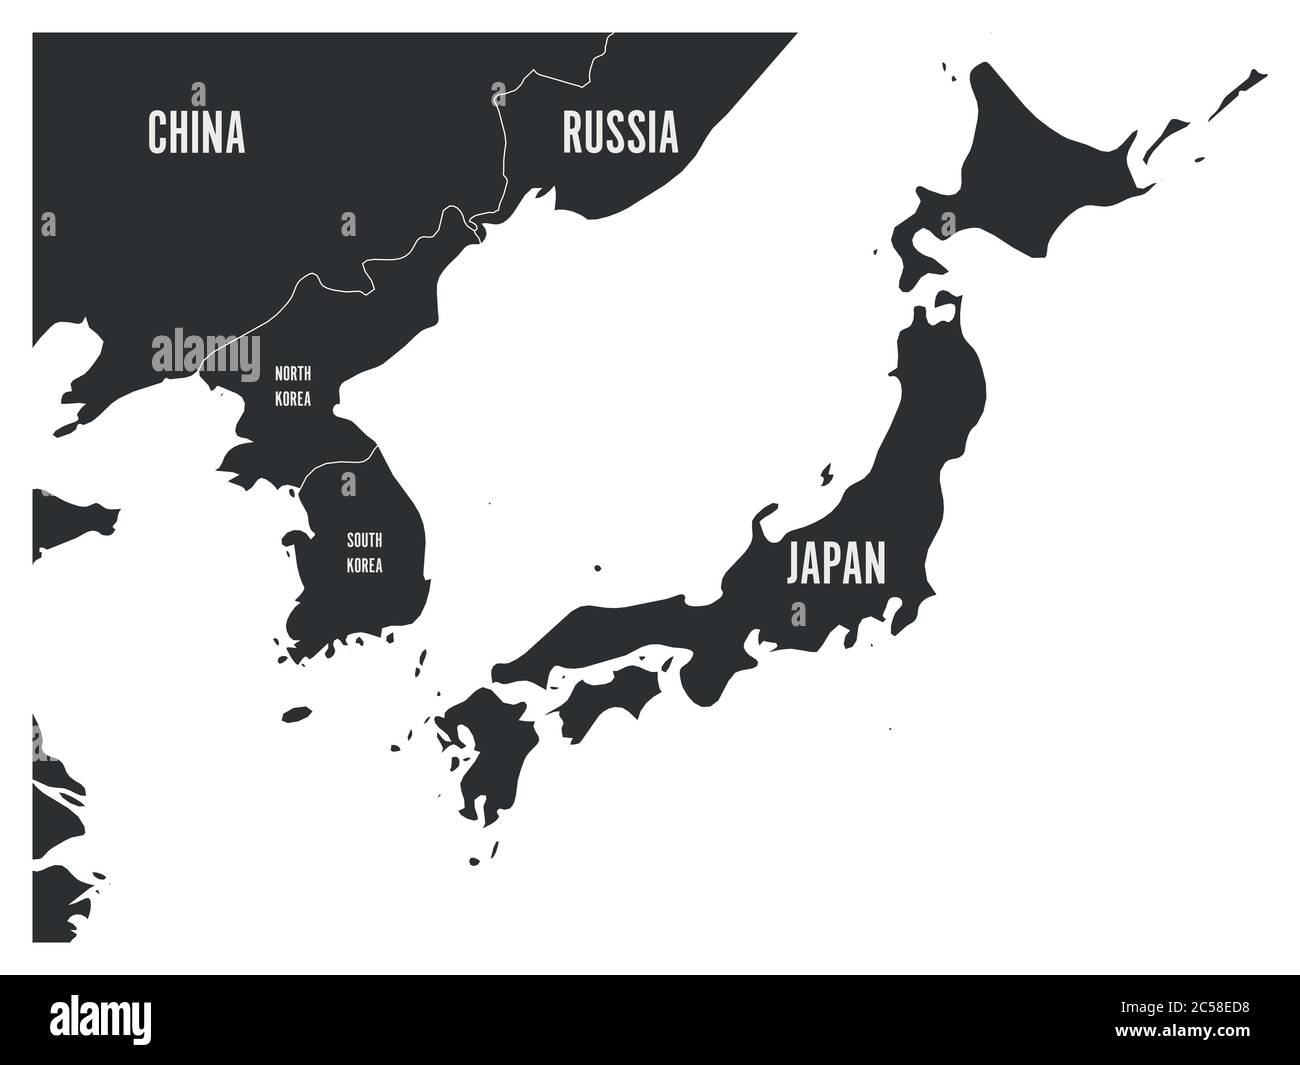 Politische Karte der koreanischen und japanischen Region, Südkorea, Nordkorea und Japan. Karte mit Beschriftung auf weißem Hintergrund. Vektorgrafik. Stock Vektor